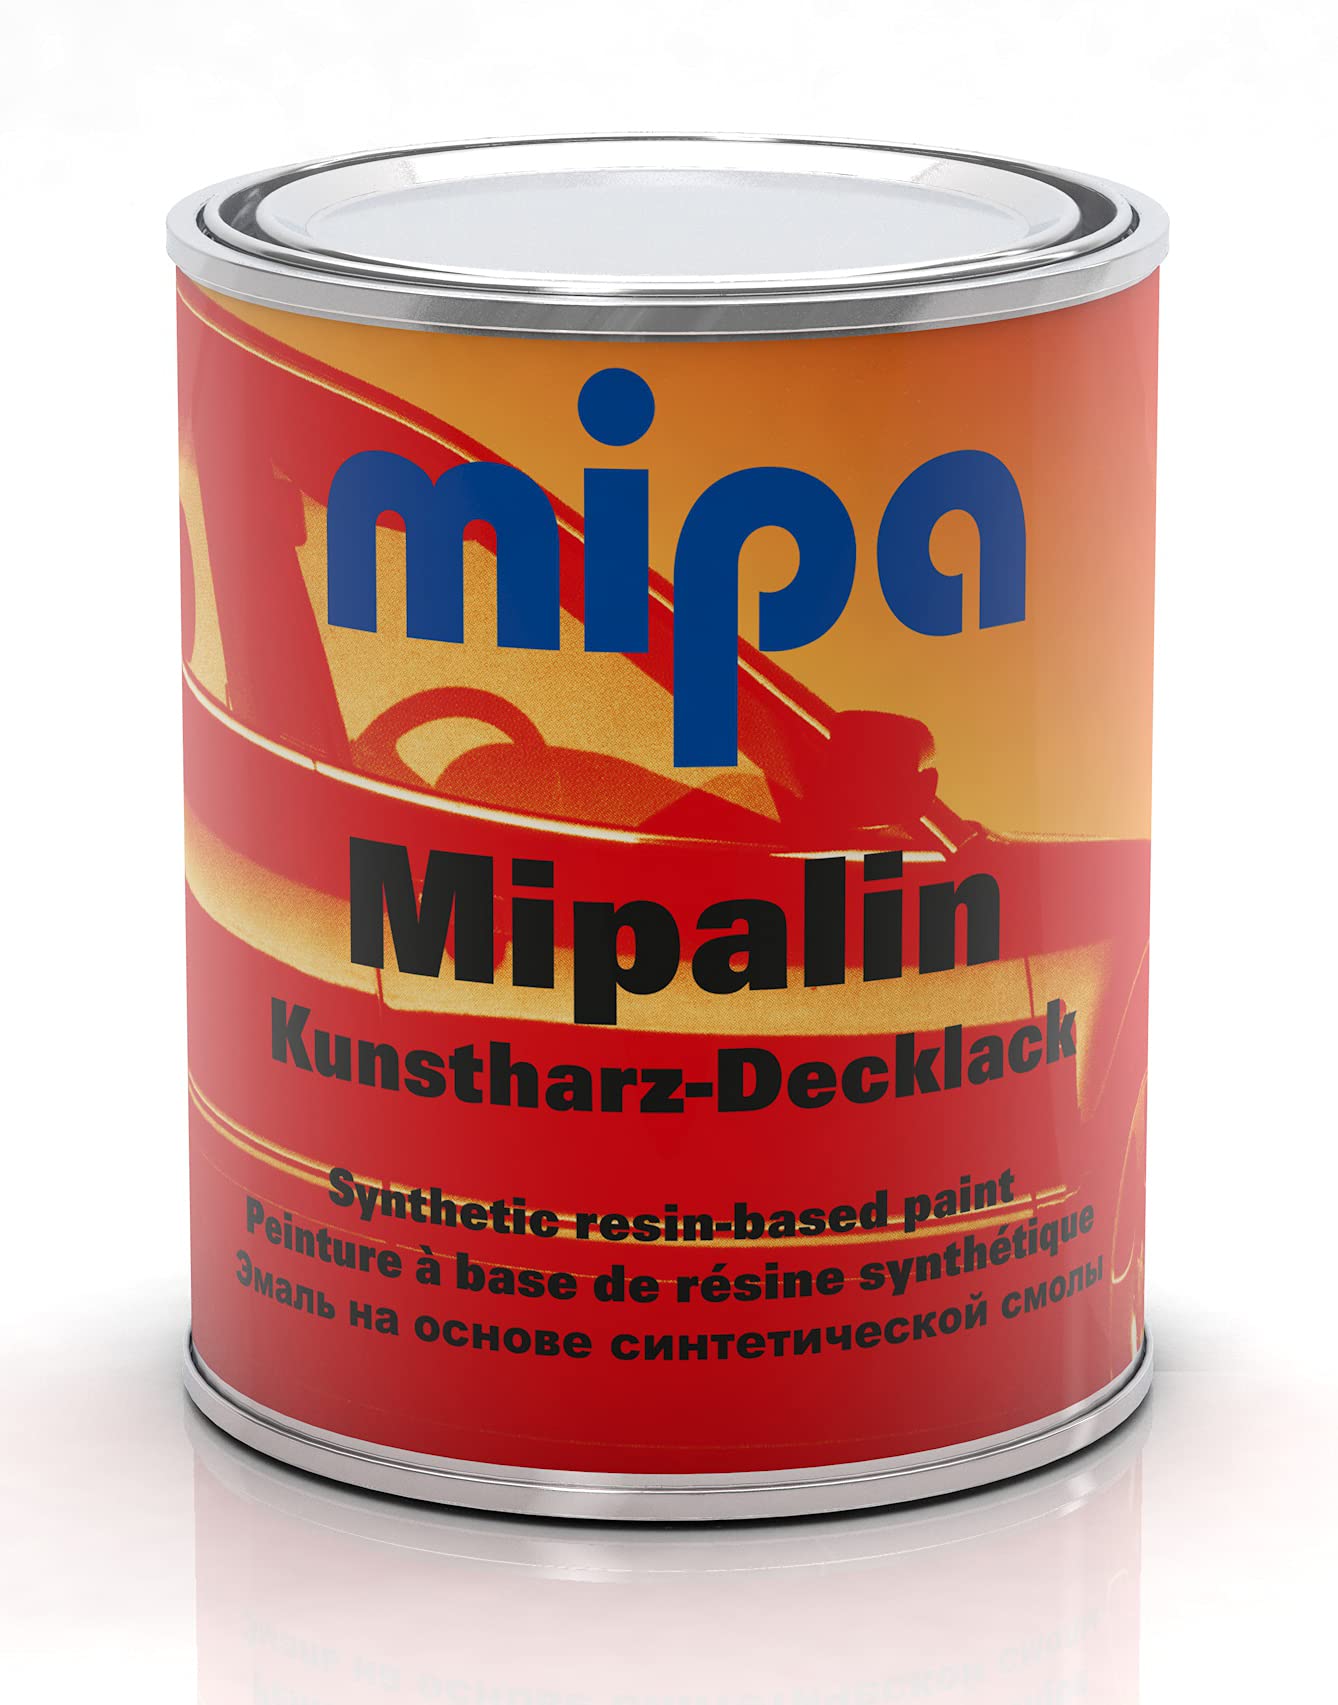 MIPA Mipalin Kunstharz Decklack RAL 2001 Rotorange 1 Liter Autolack Lack von MIPA